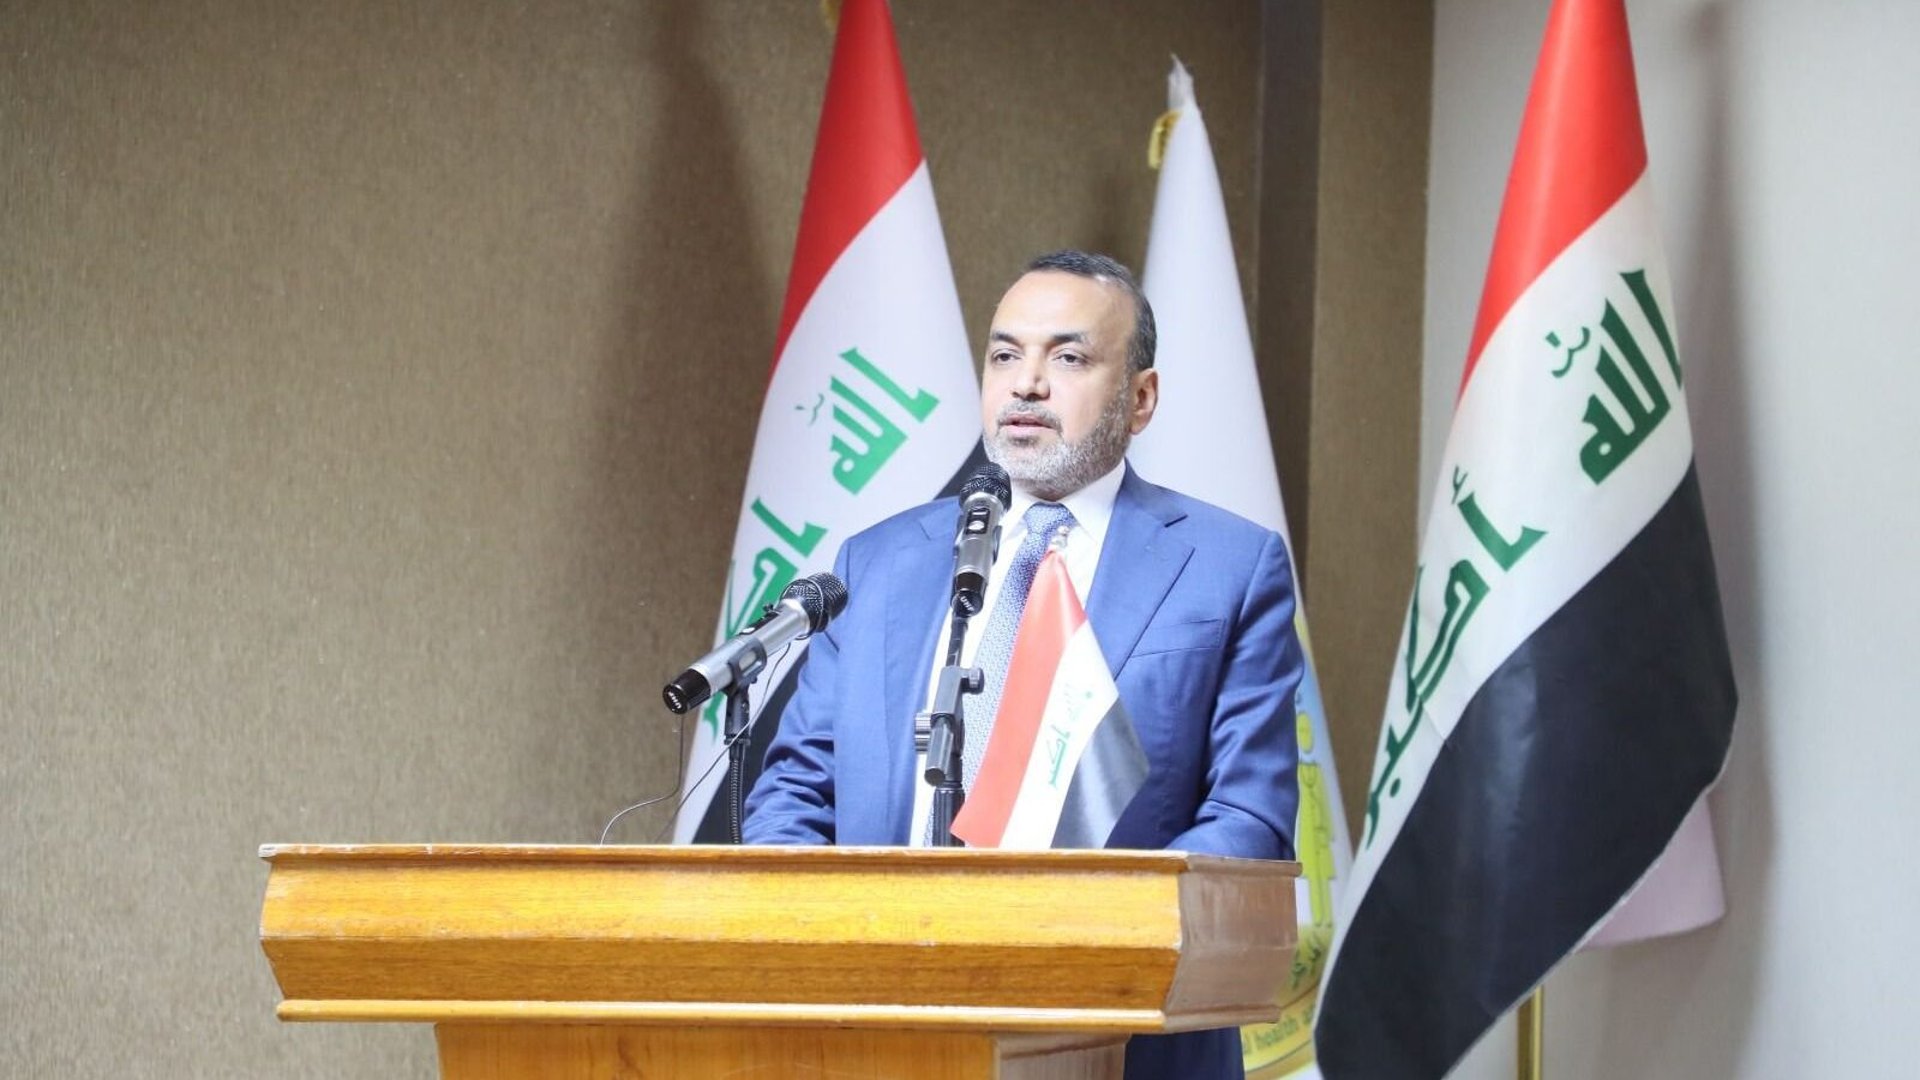 وزير العمل: سنشرع قانوناً خاصاً بالصحة والسلامة المهنية في العراق